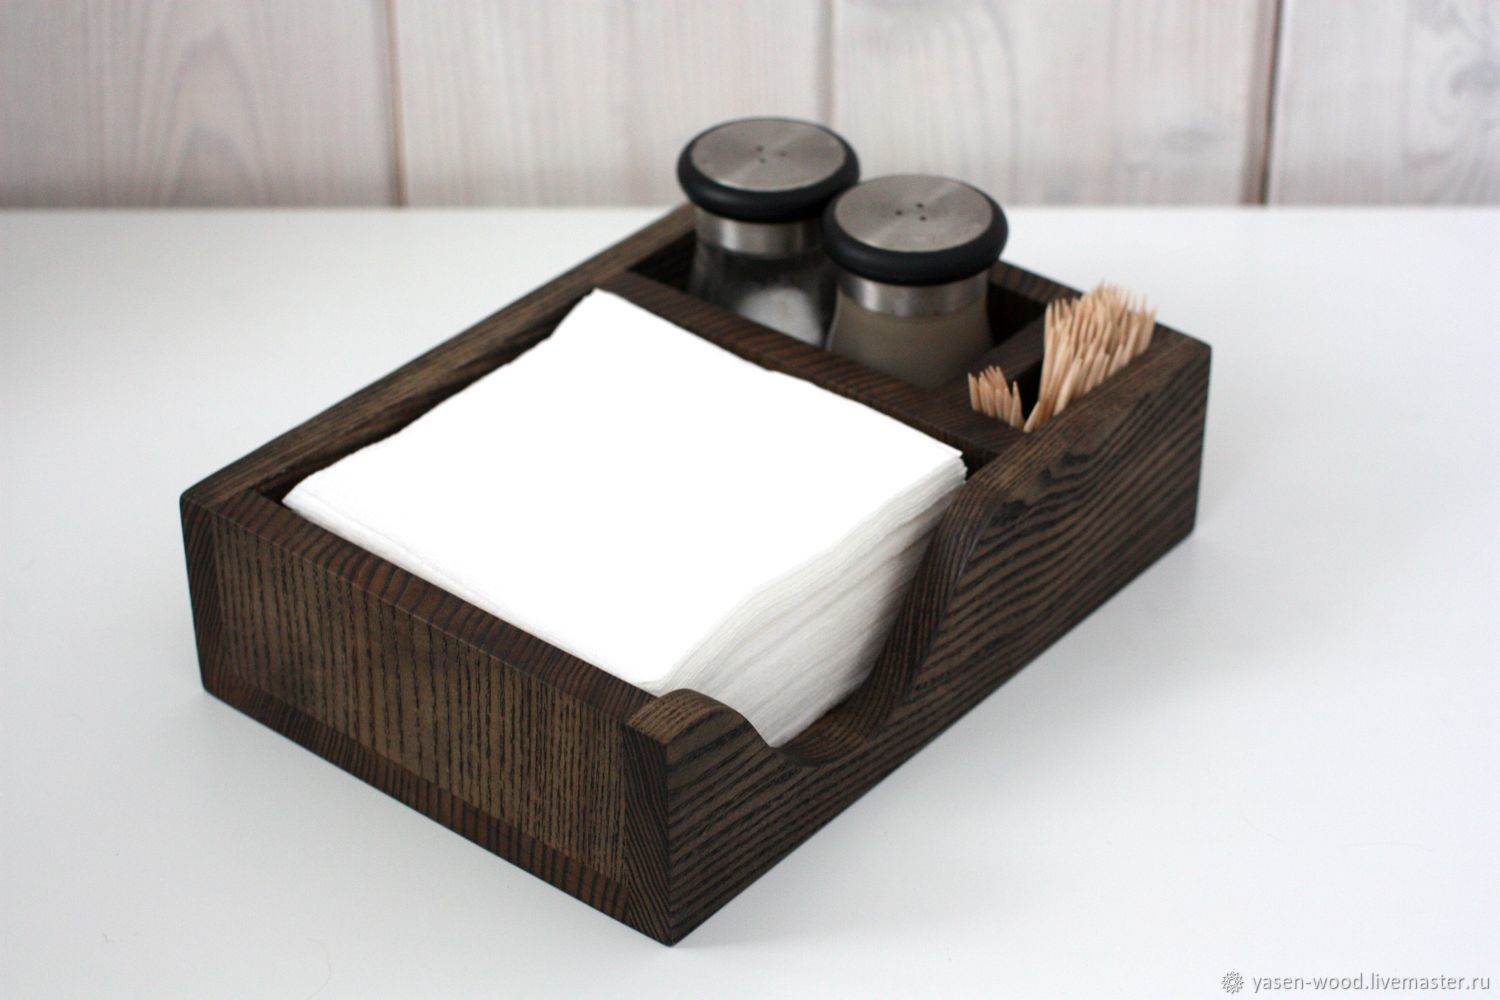 napkin box